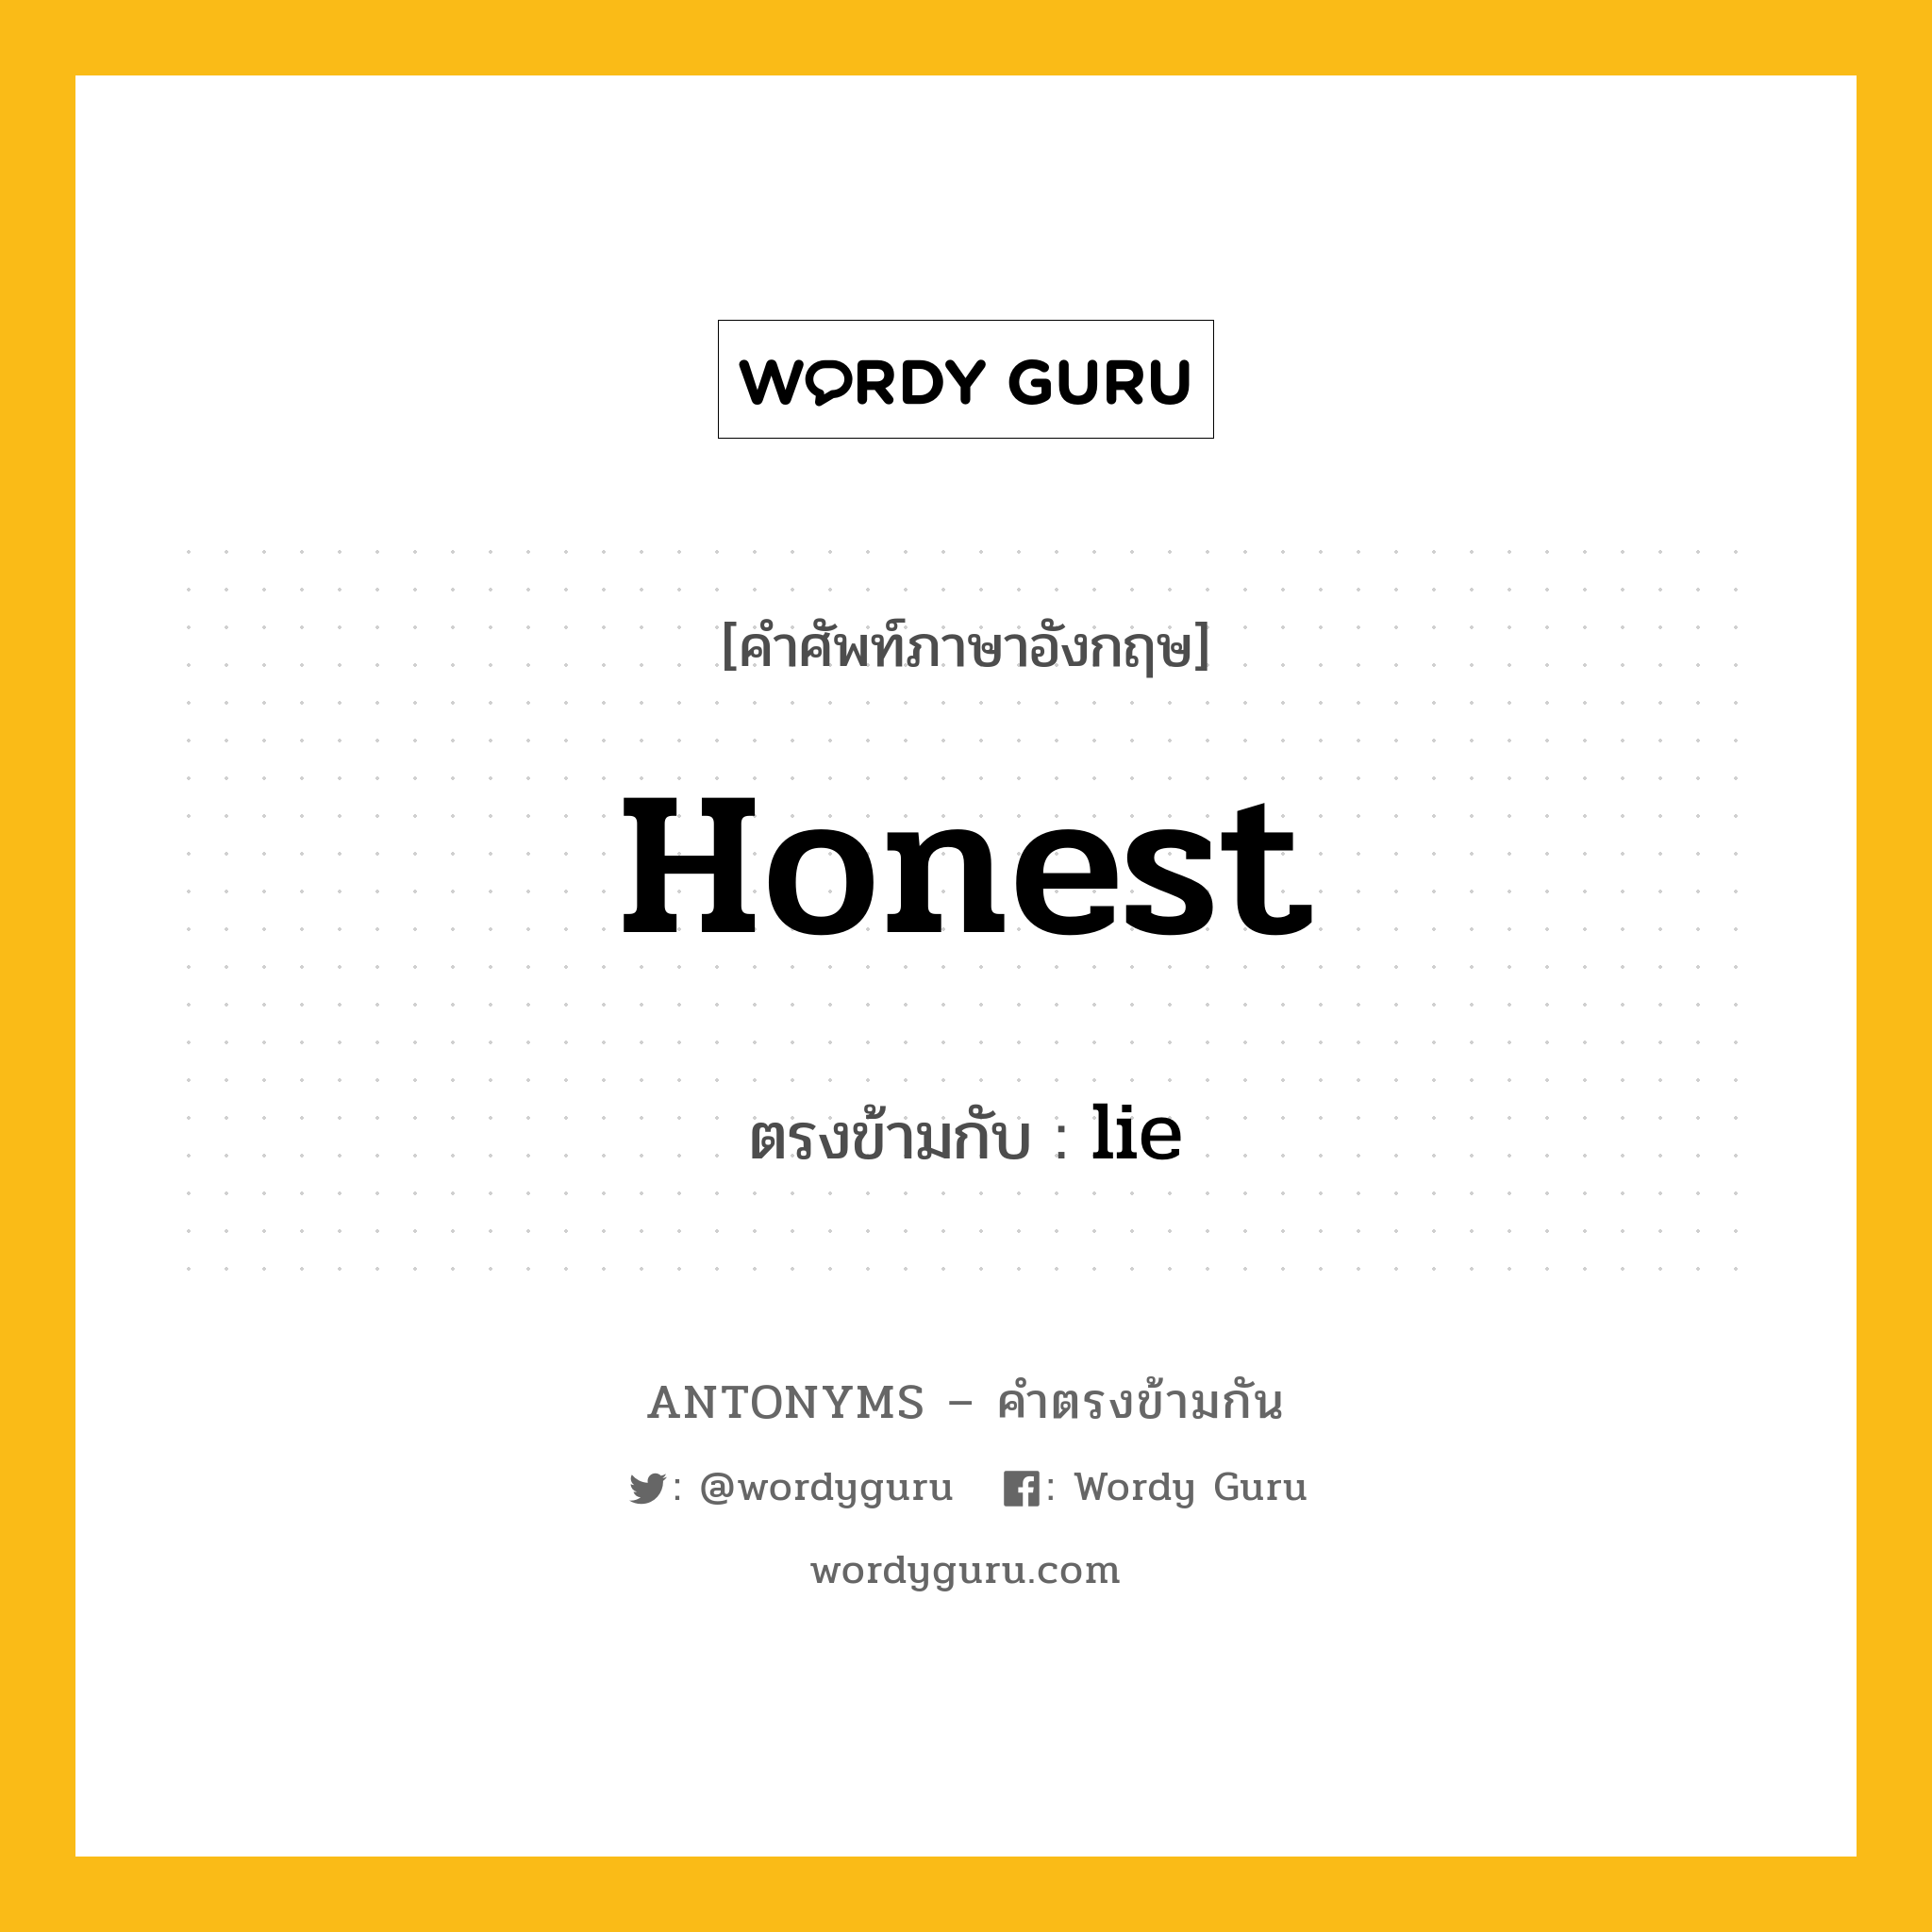 honest เป็นคำตรงข้ามกับคำไหนบ้าง?, คำศัพท์ภาษาอังกฤษ honest ตรงข้ามกับ lie หมวด lie